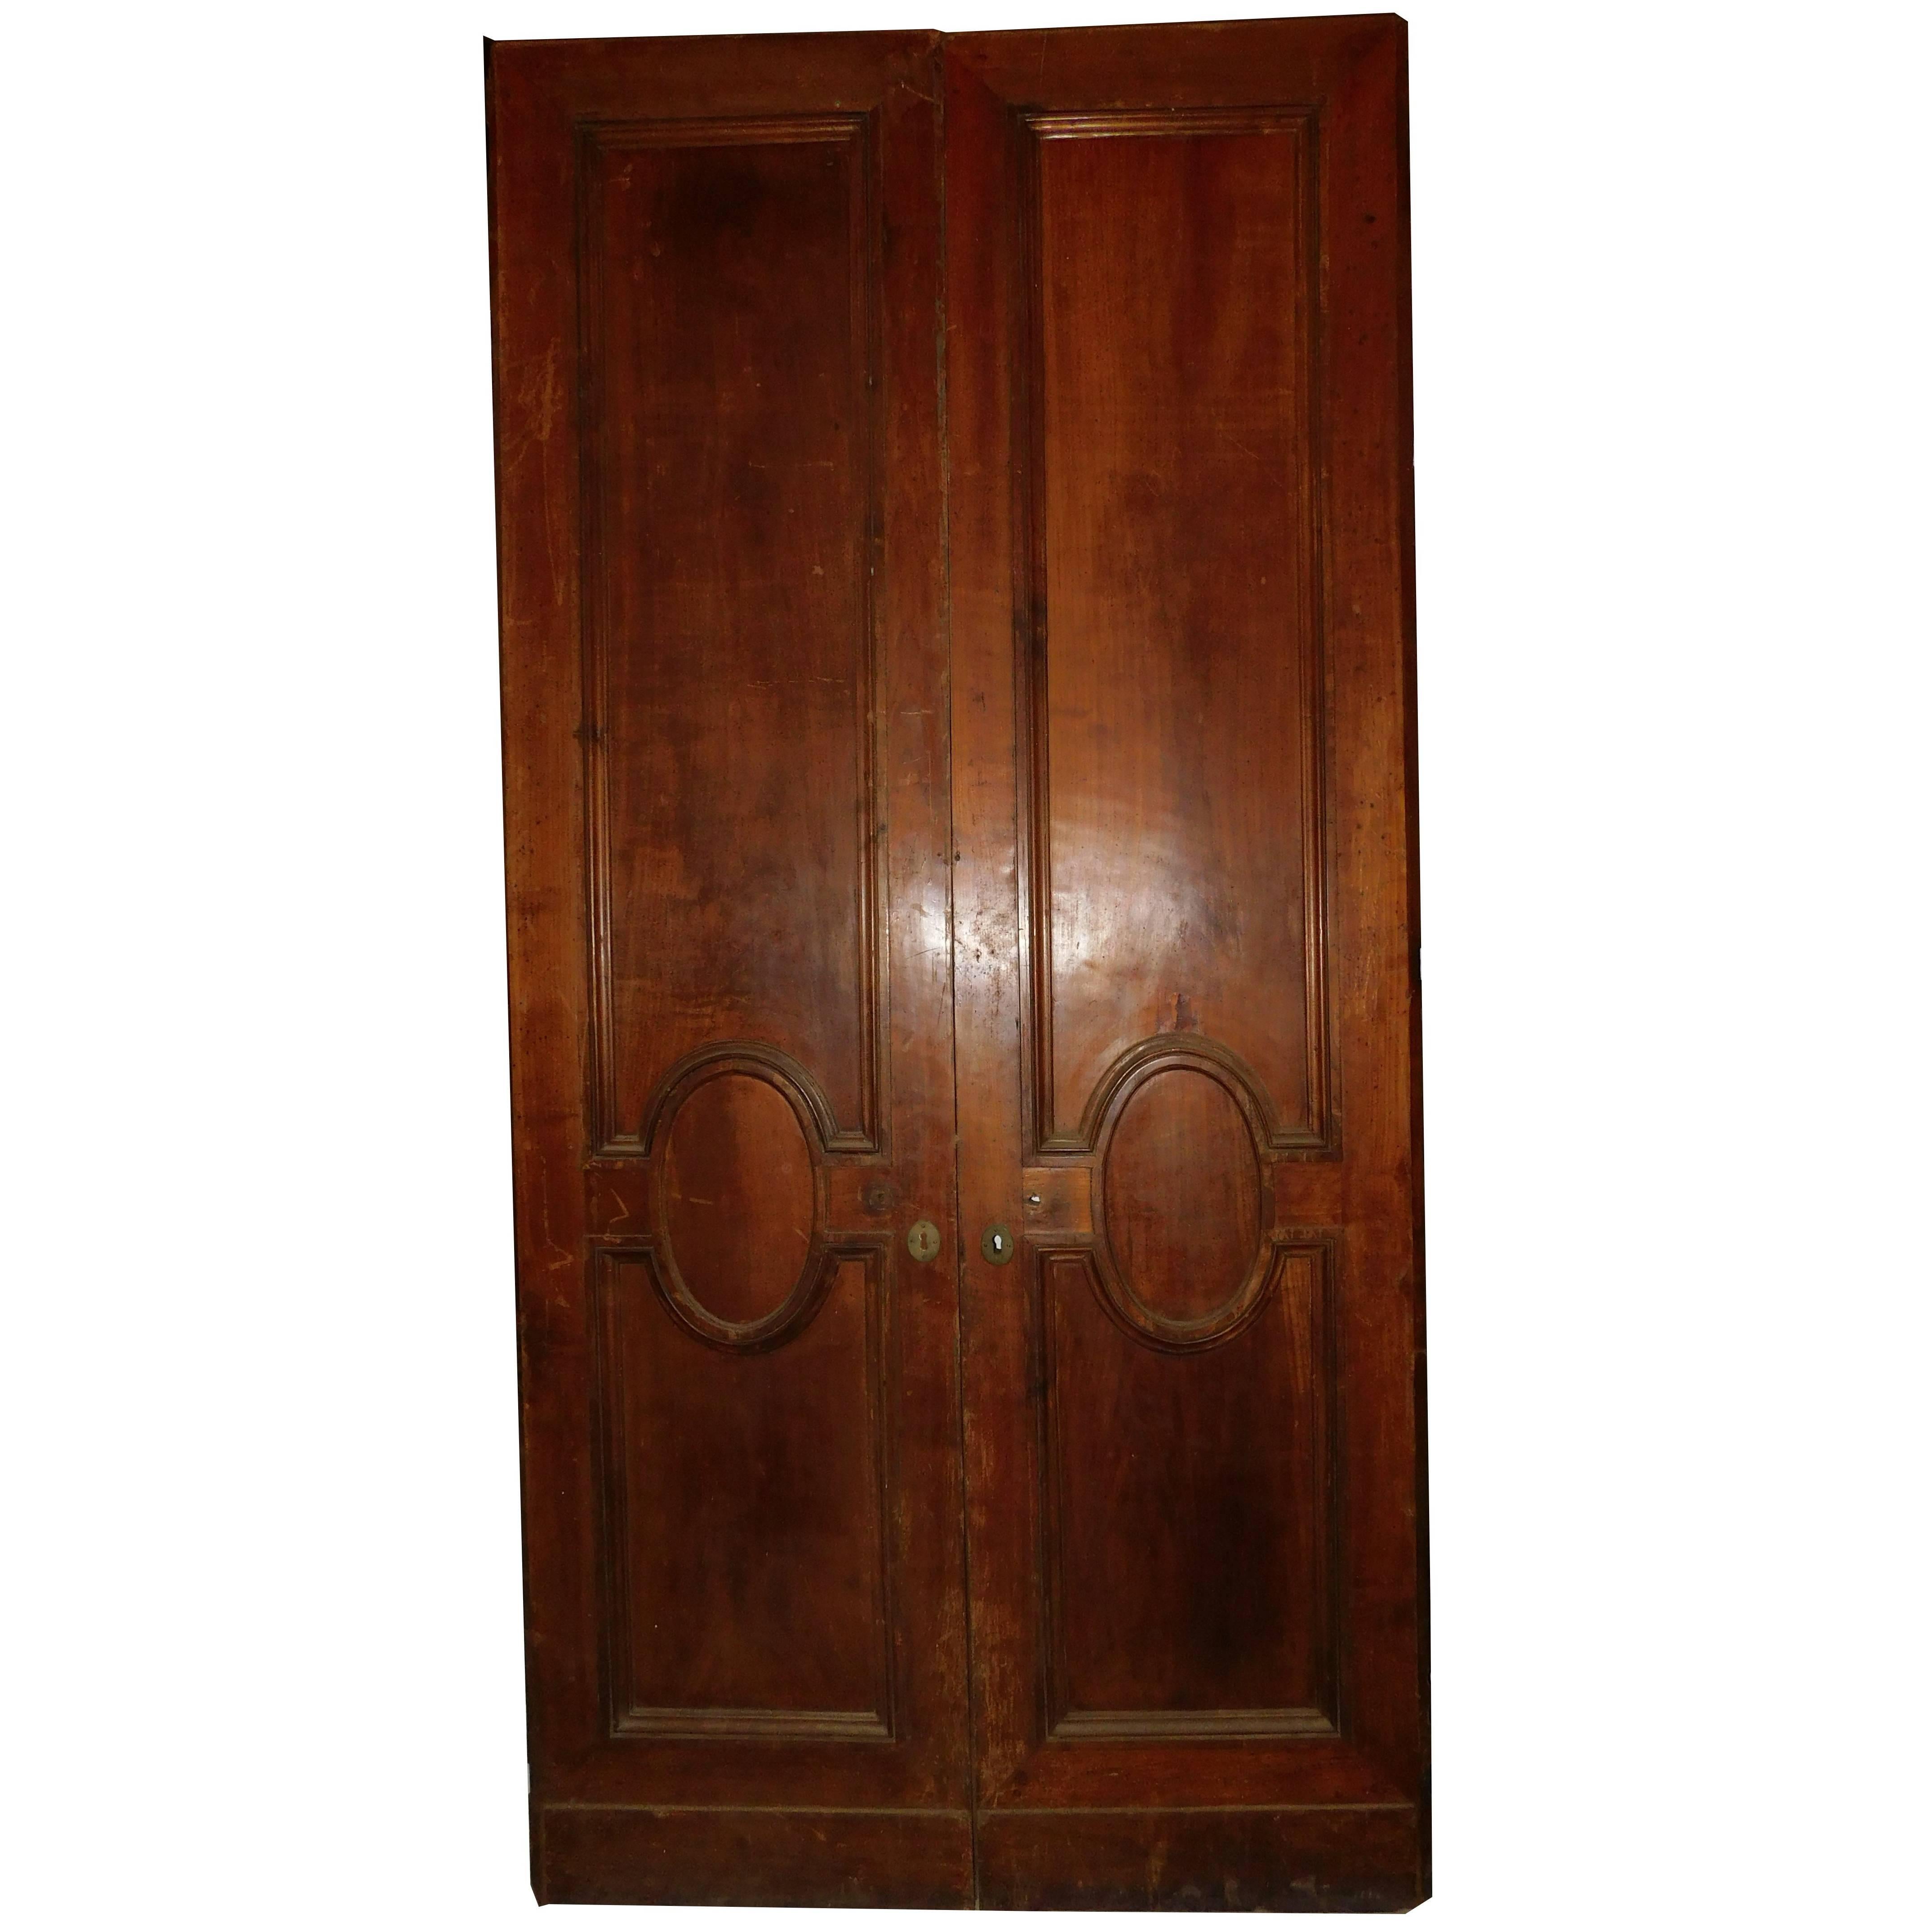 Antique Double Door